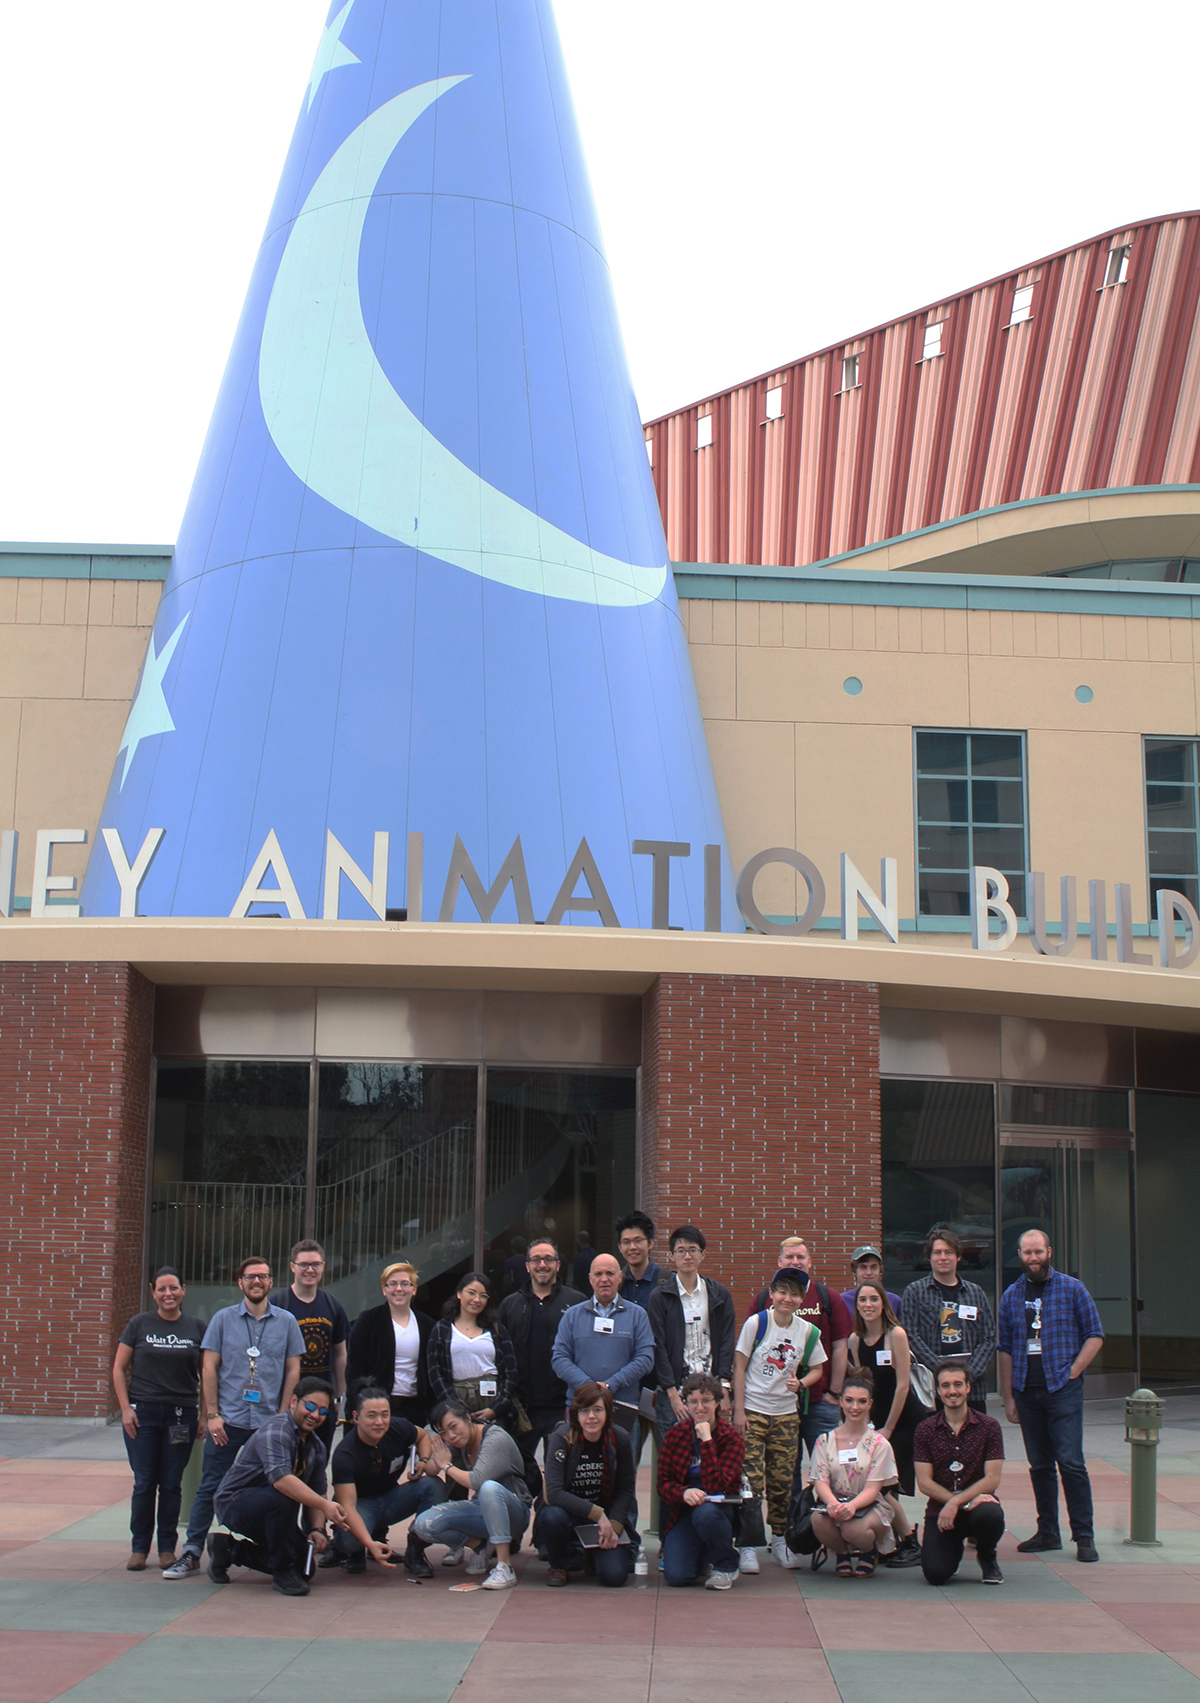 walt disney animation studios building